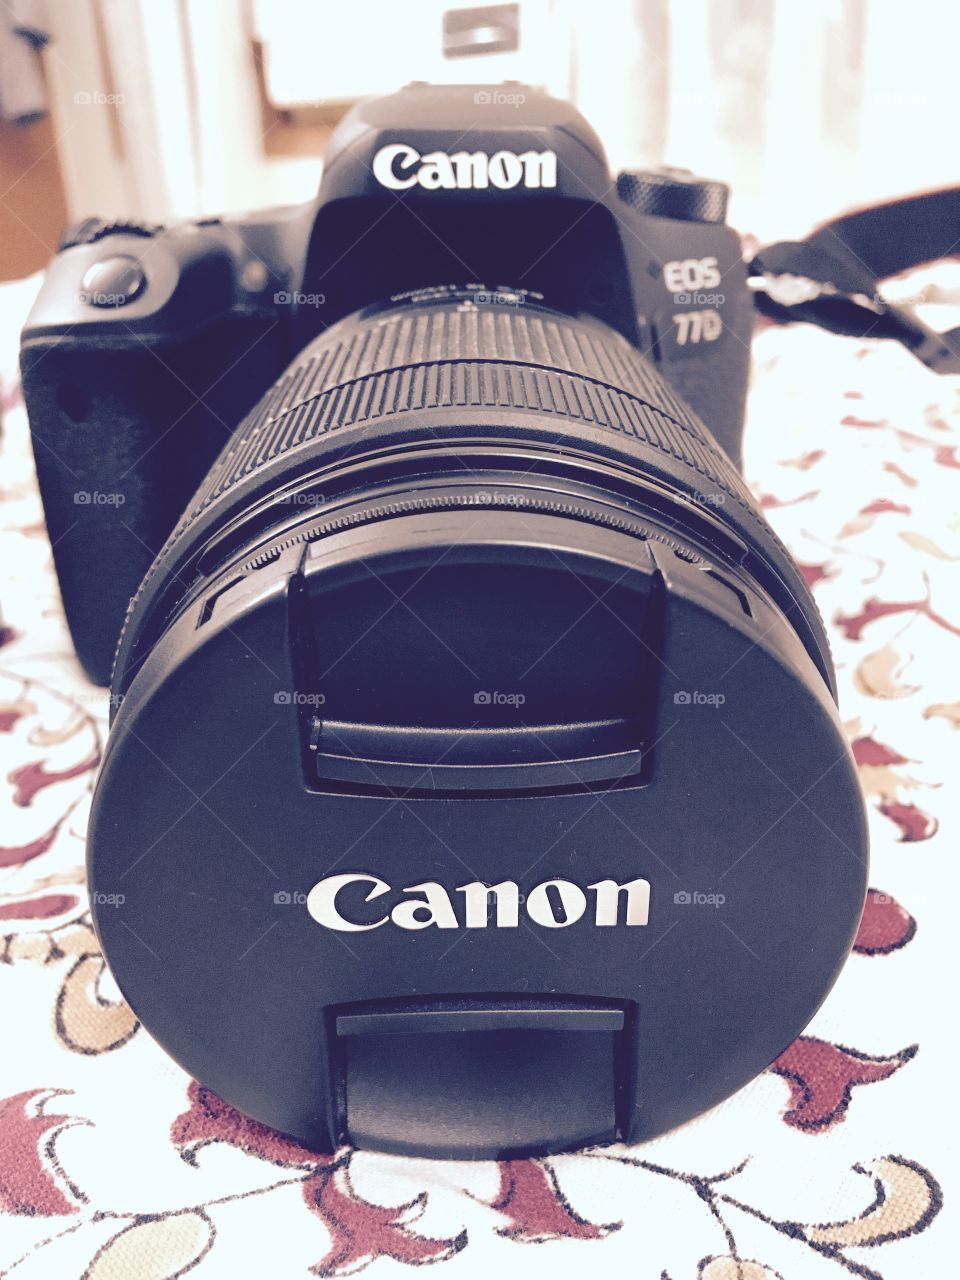 Canon dslr camera, camera 